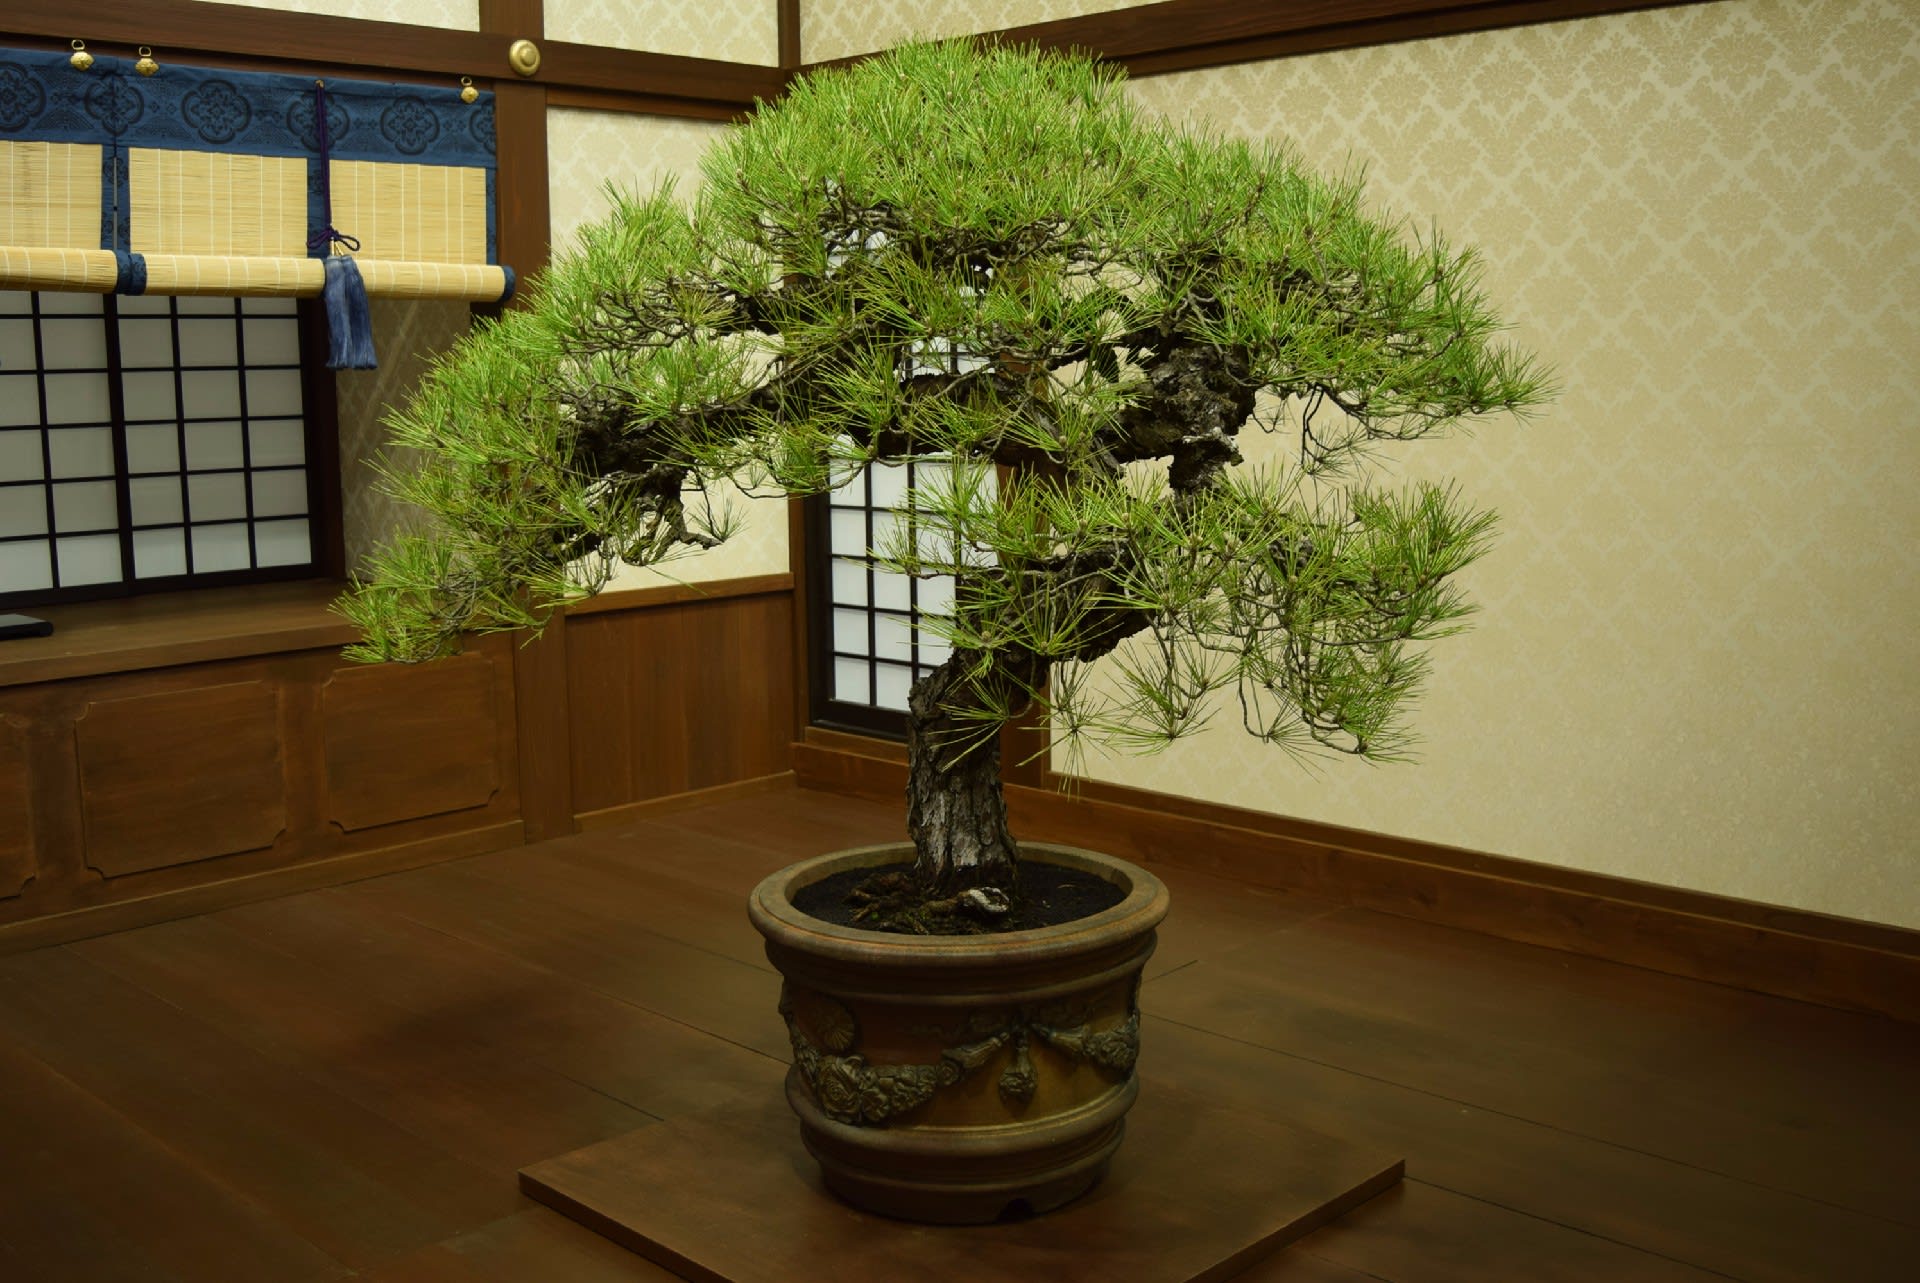 さいたまアリーナ、世界盆栽大会「日本の盆栽水石至宝展」 - オーロラ 